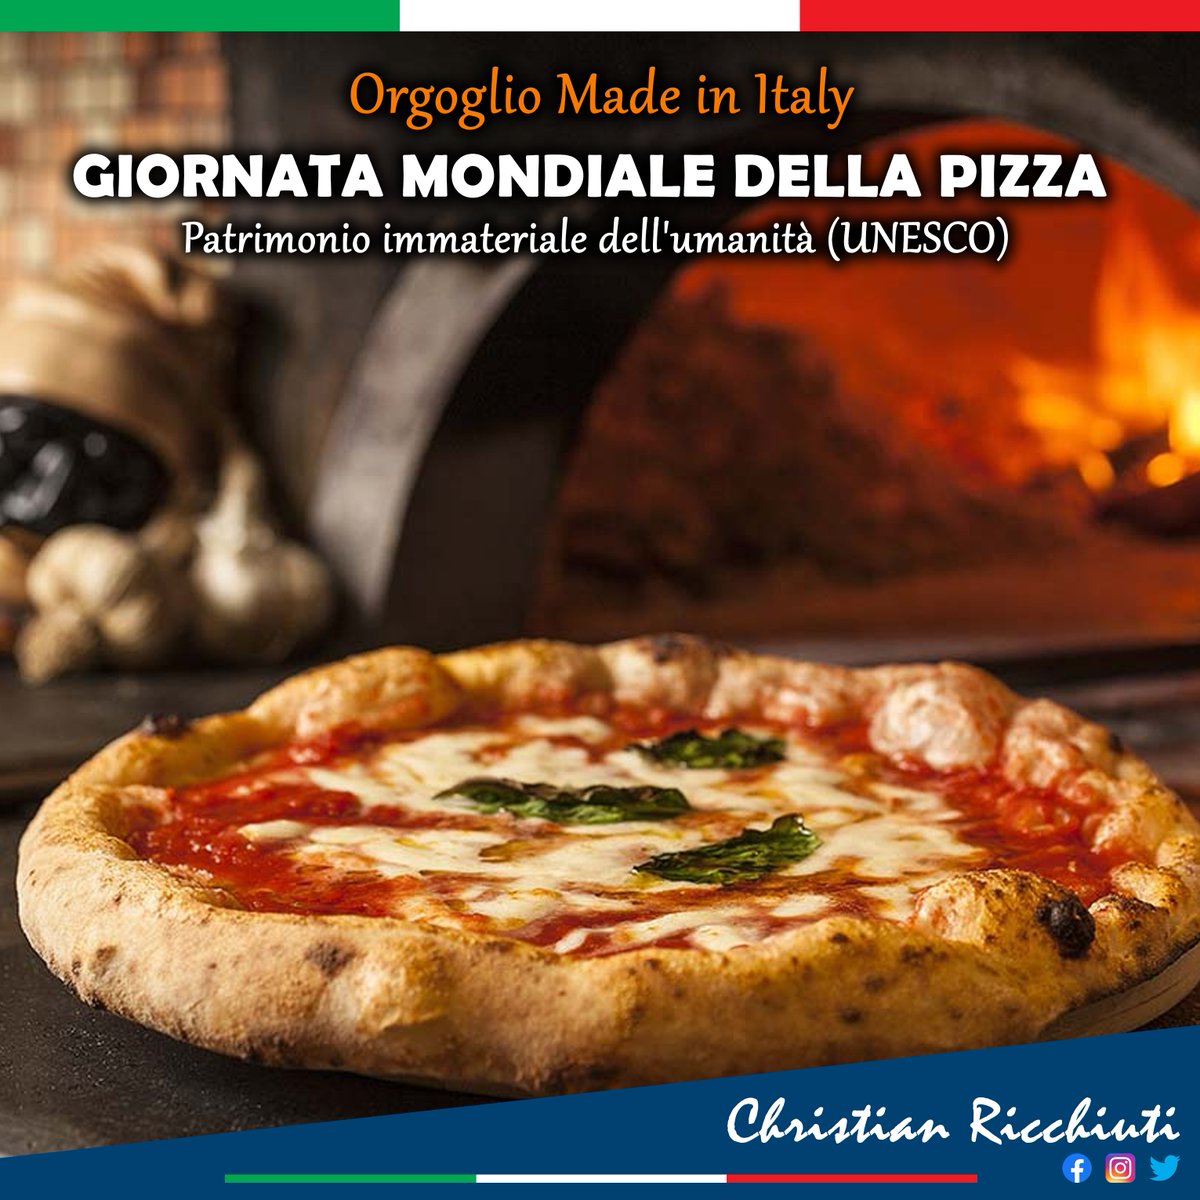 💚🤍❤️
GIORNATA MONDIALE DELLA PIZZA🍕
Il nostro orgoglio #MadeInItaly ❤️🇮🇹

#pizza #giornatamondialedellapizza #PizzaDay #Italy #orgoglioitaliano